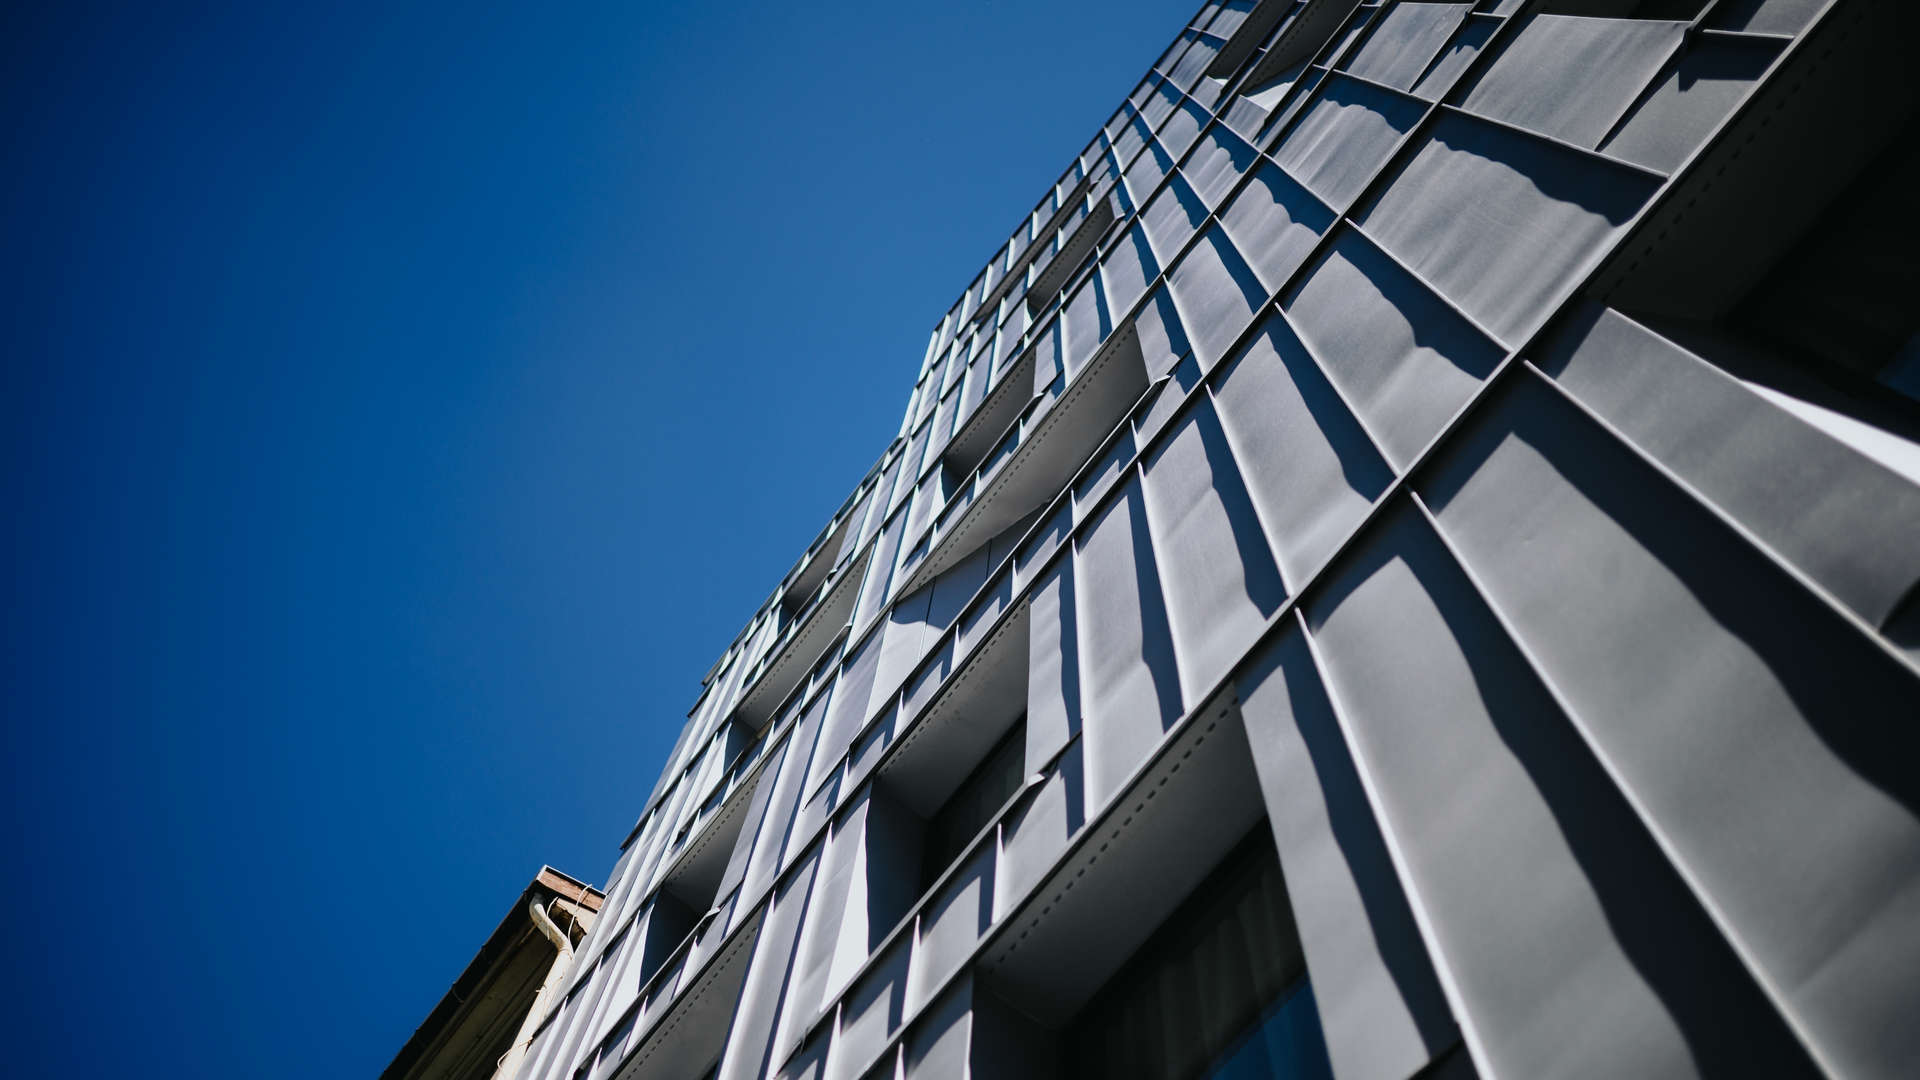 vue oblique de la façade de l'hôtel boutique de lyon contre le ciel bleu 